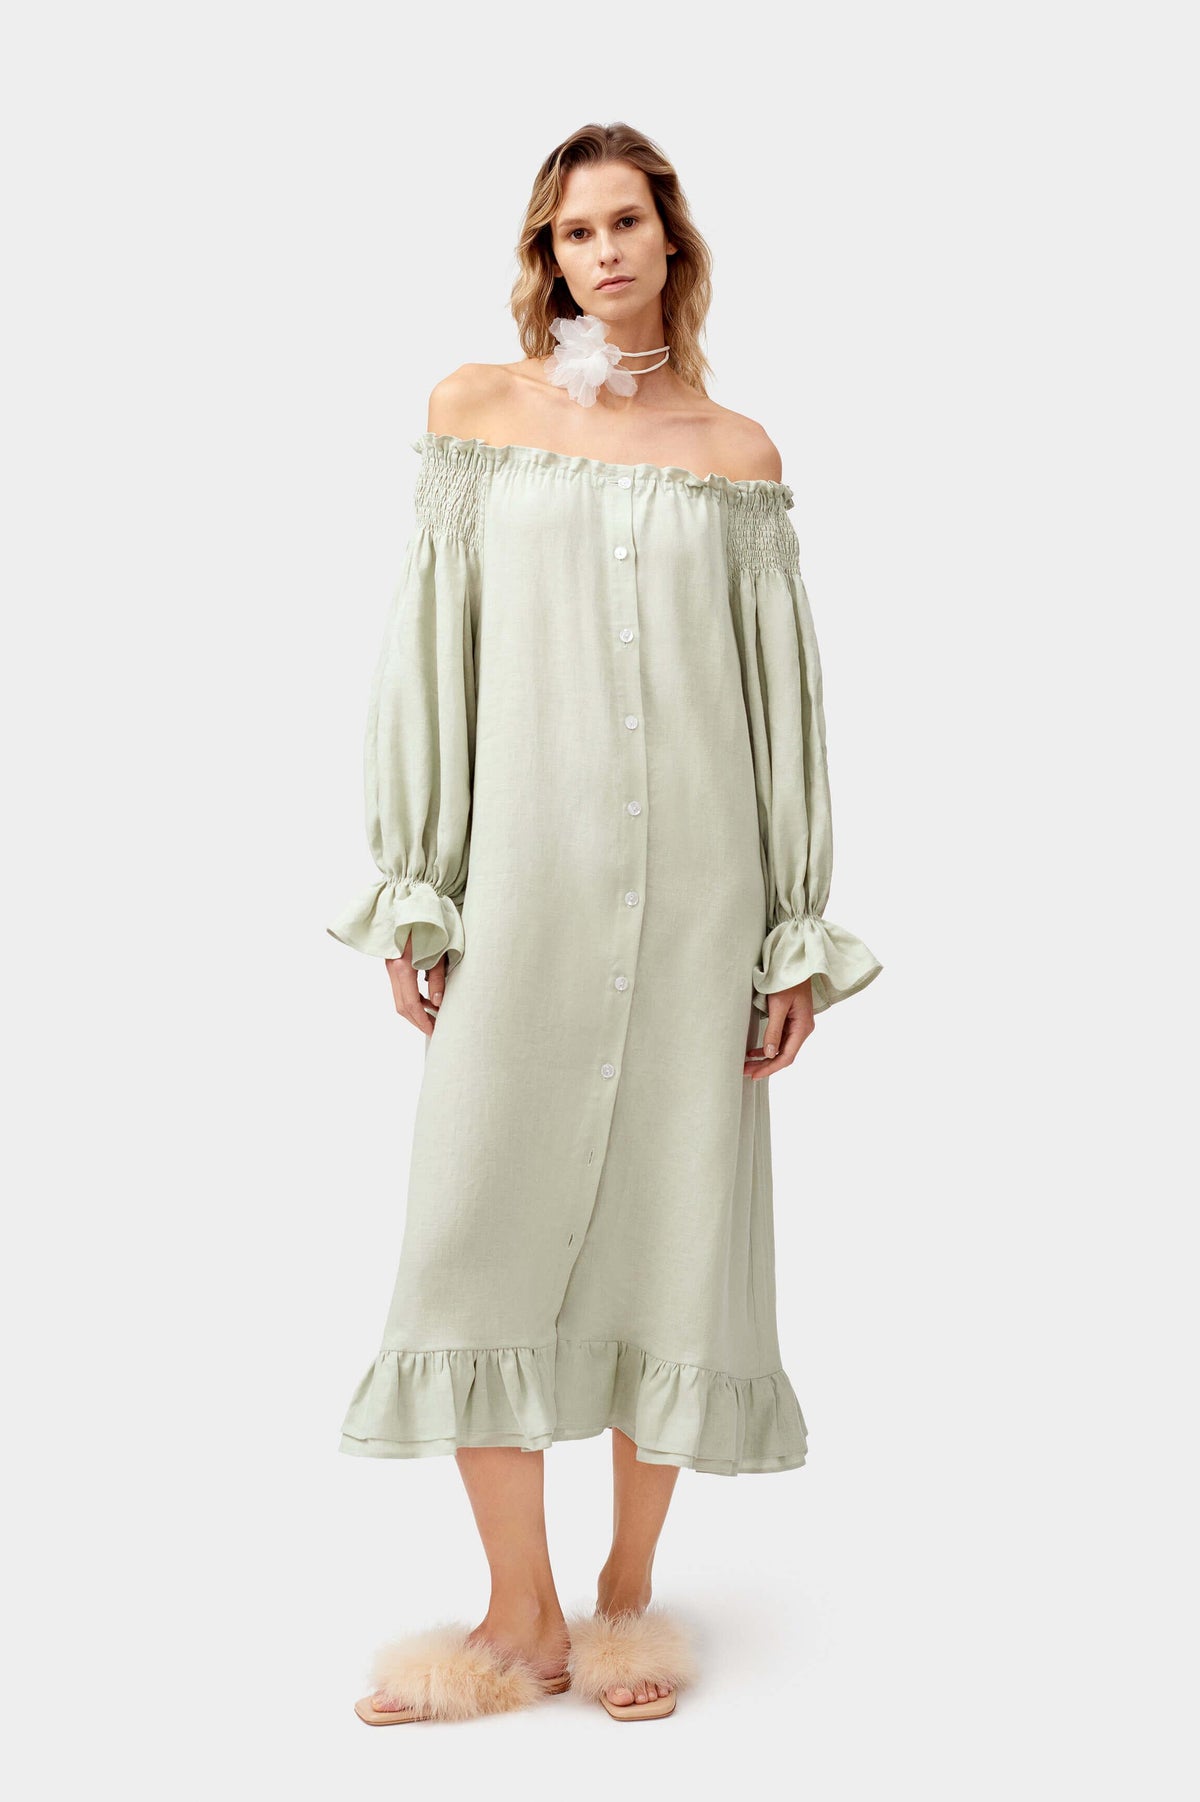 SLEEPER - Sleeper Romantica Linen dress in Pistachio Green - OutDazl